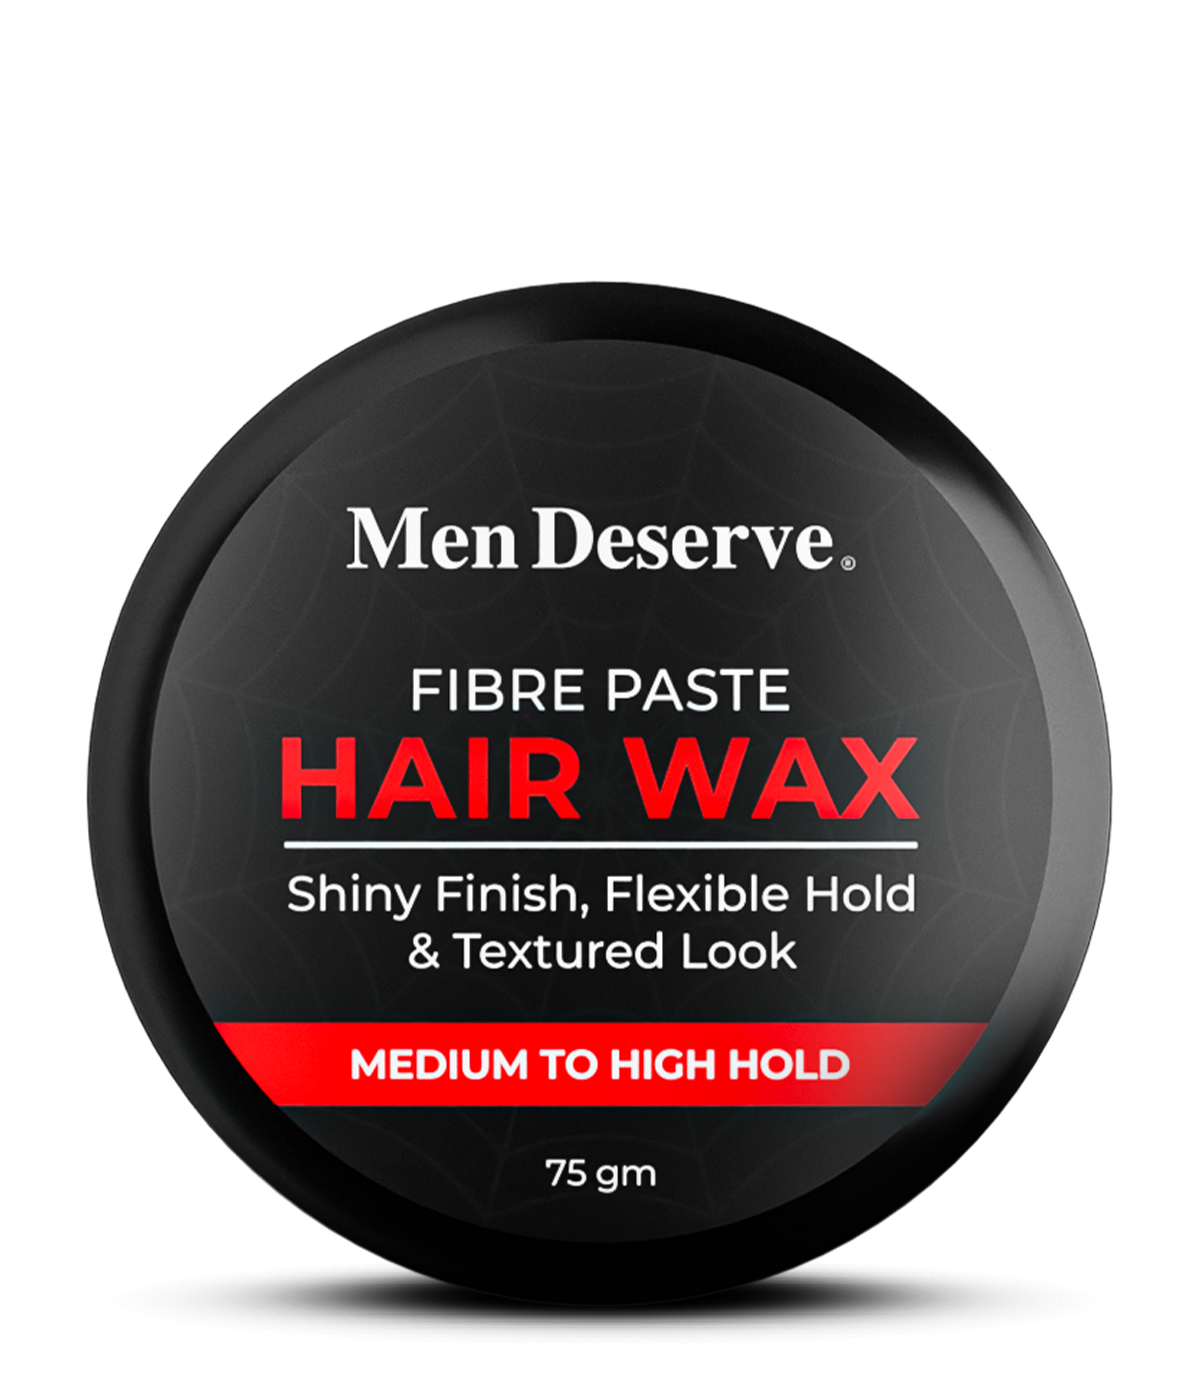 Fiber Paste for Men's Hair | Fiber Paste Hair Wax | Men Deserve